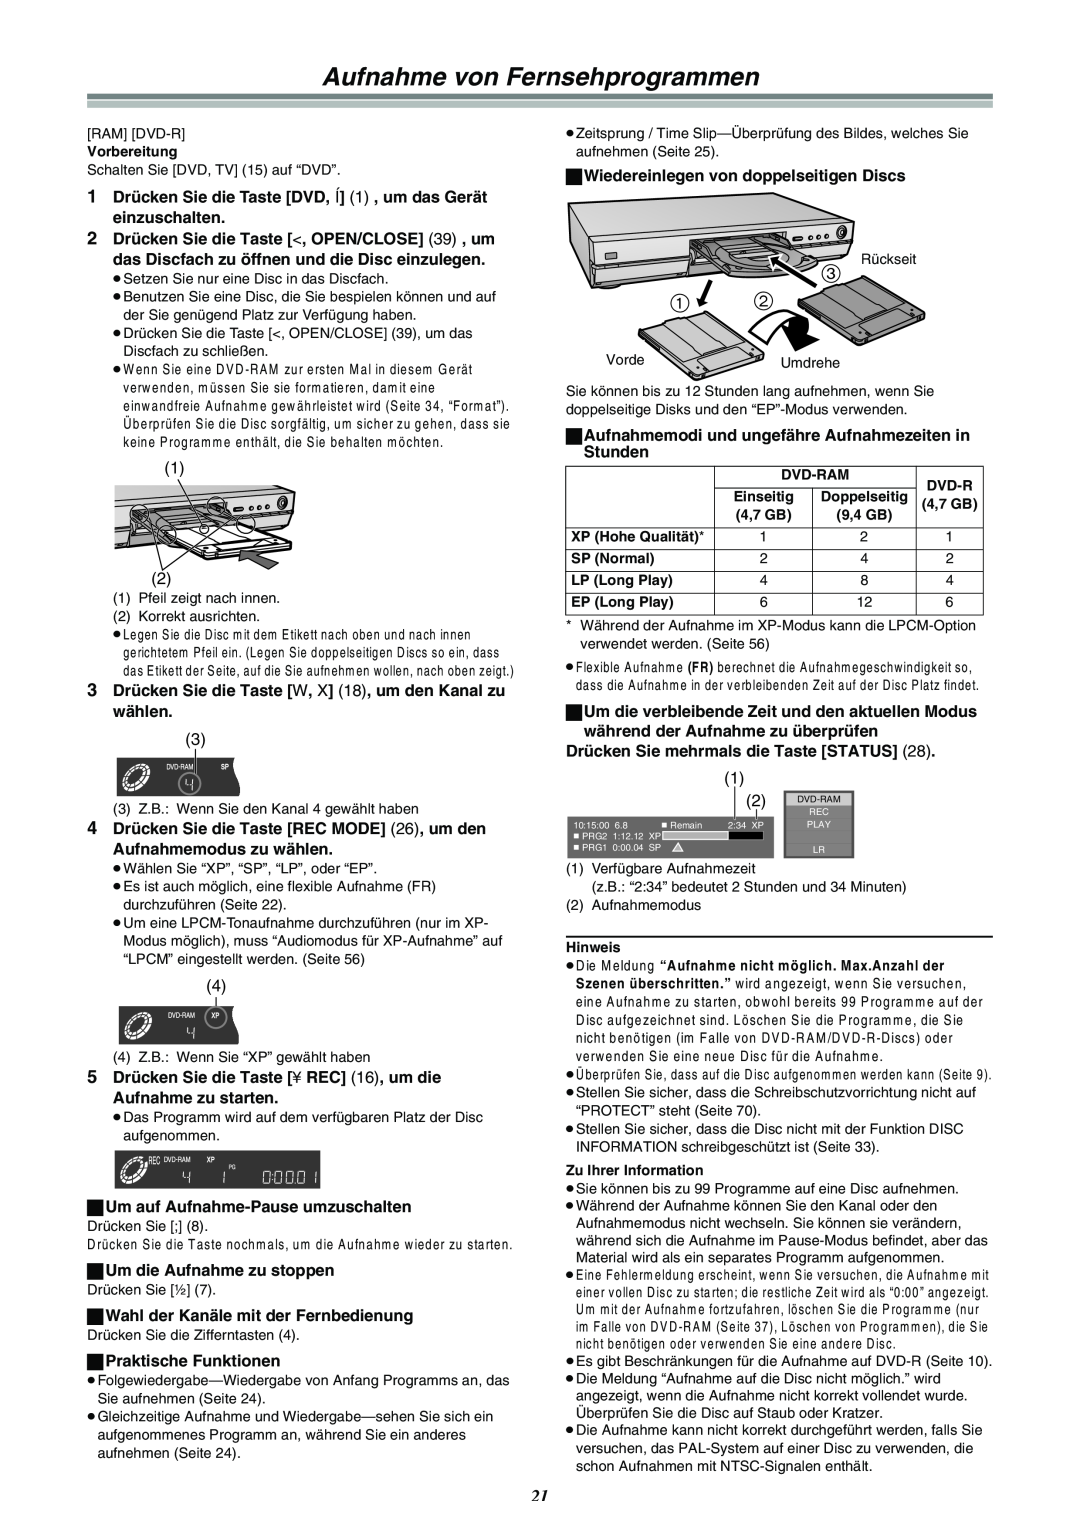 Panasonic DMR-E30 manual Aufnahme von Fernsehprogrammen 